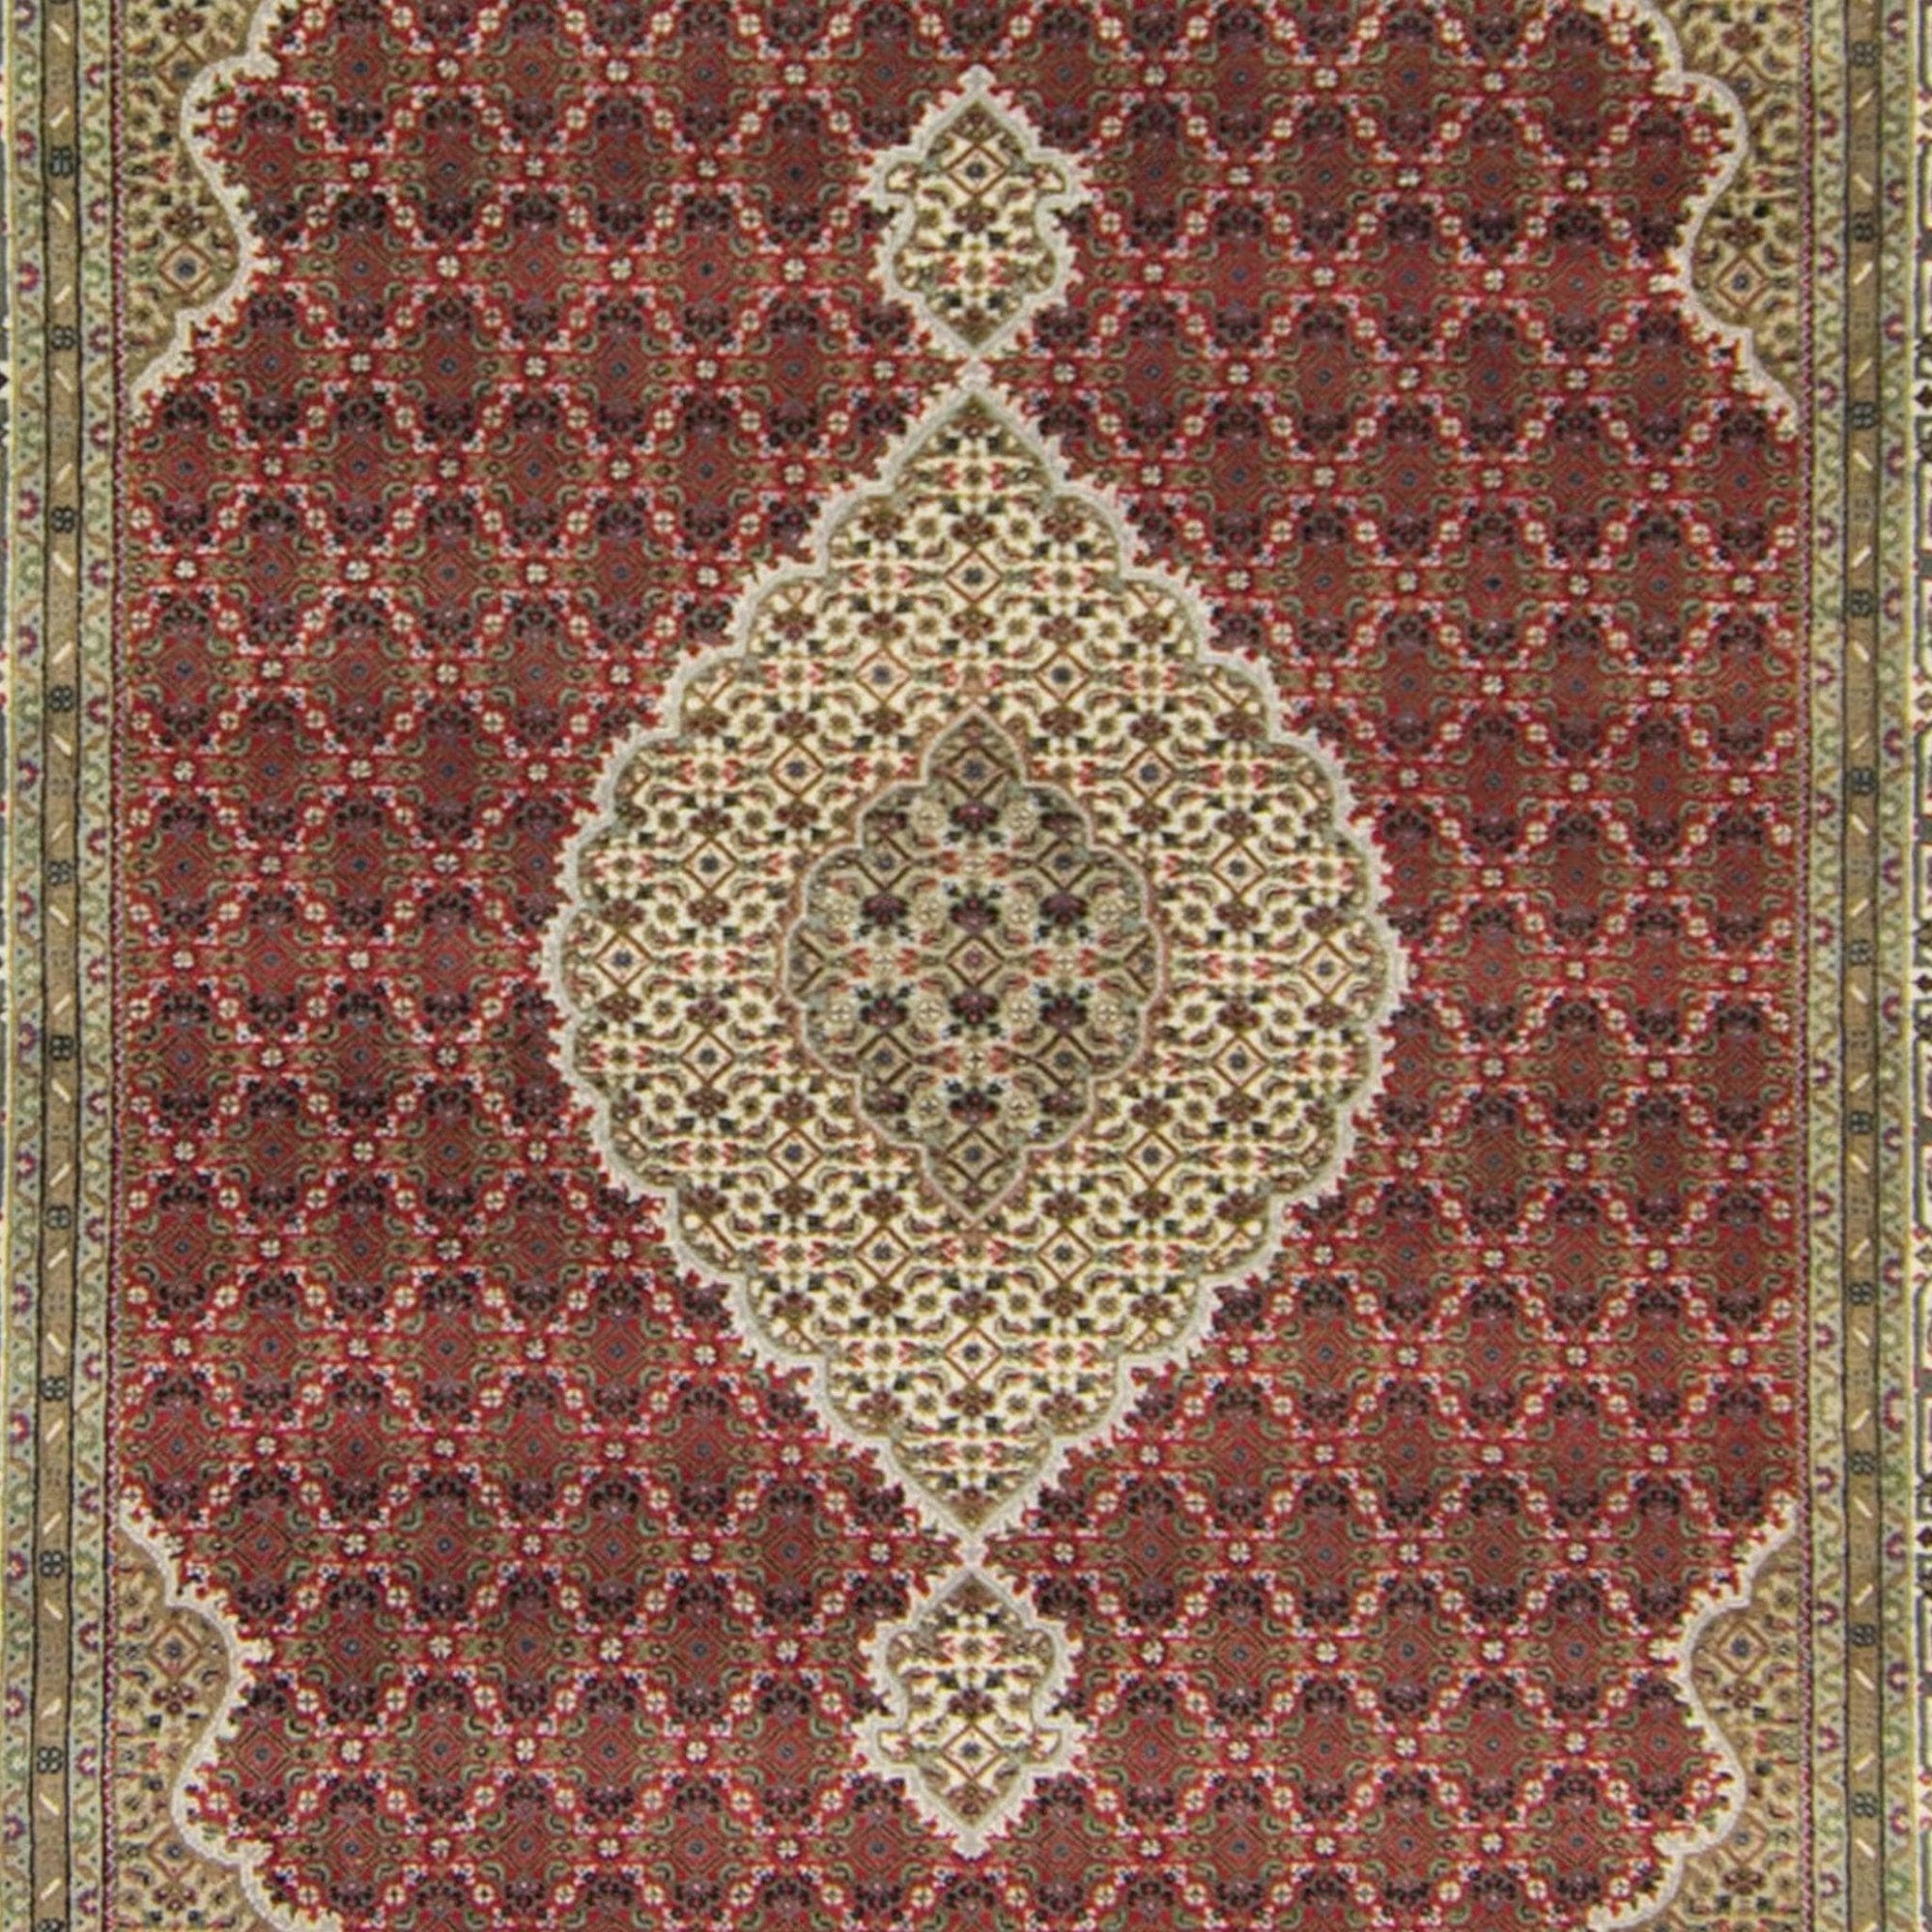 Fine Hand-knotted Wool & Silk Tabriz - Mahi Design Rug 203cm x 303cm